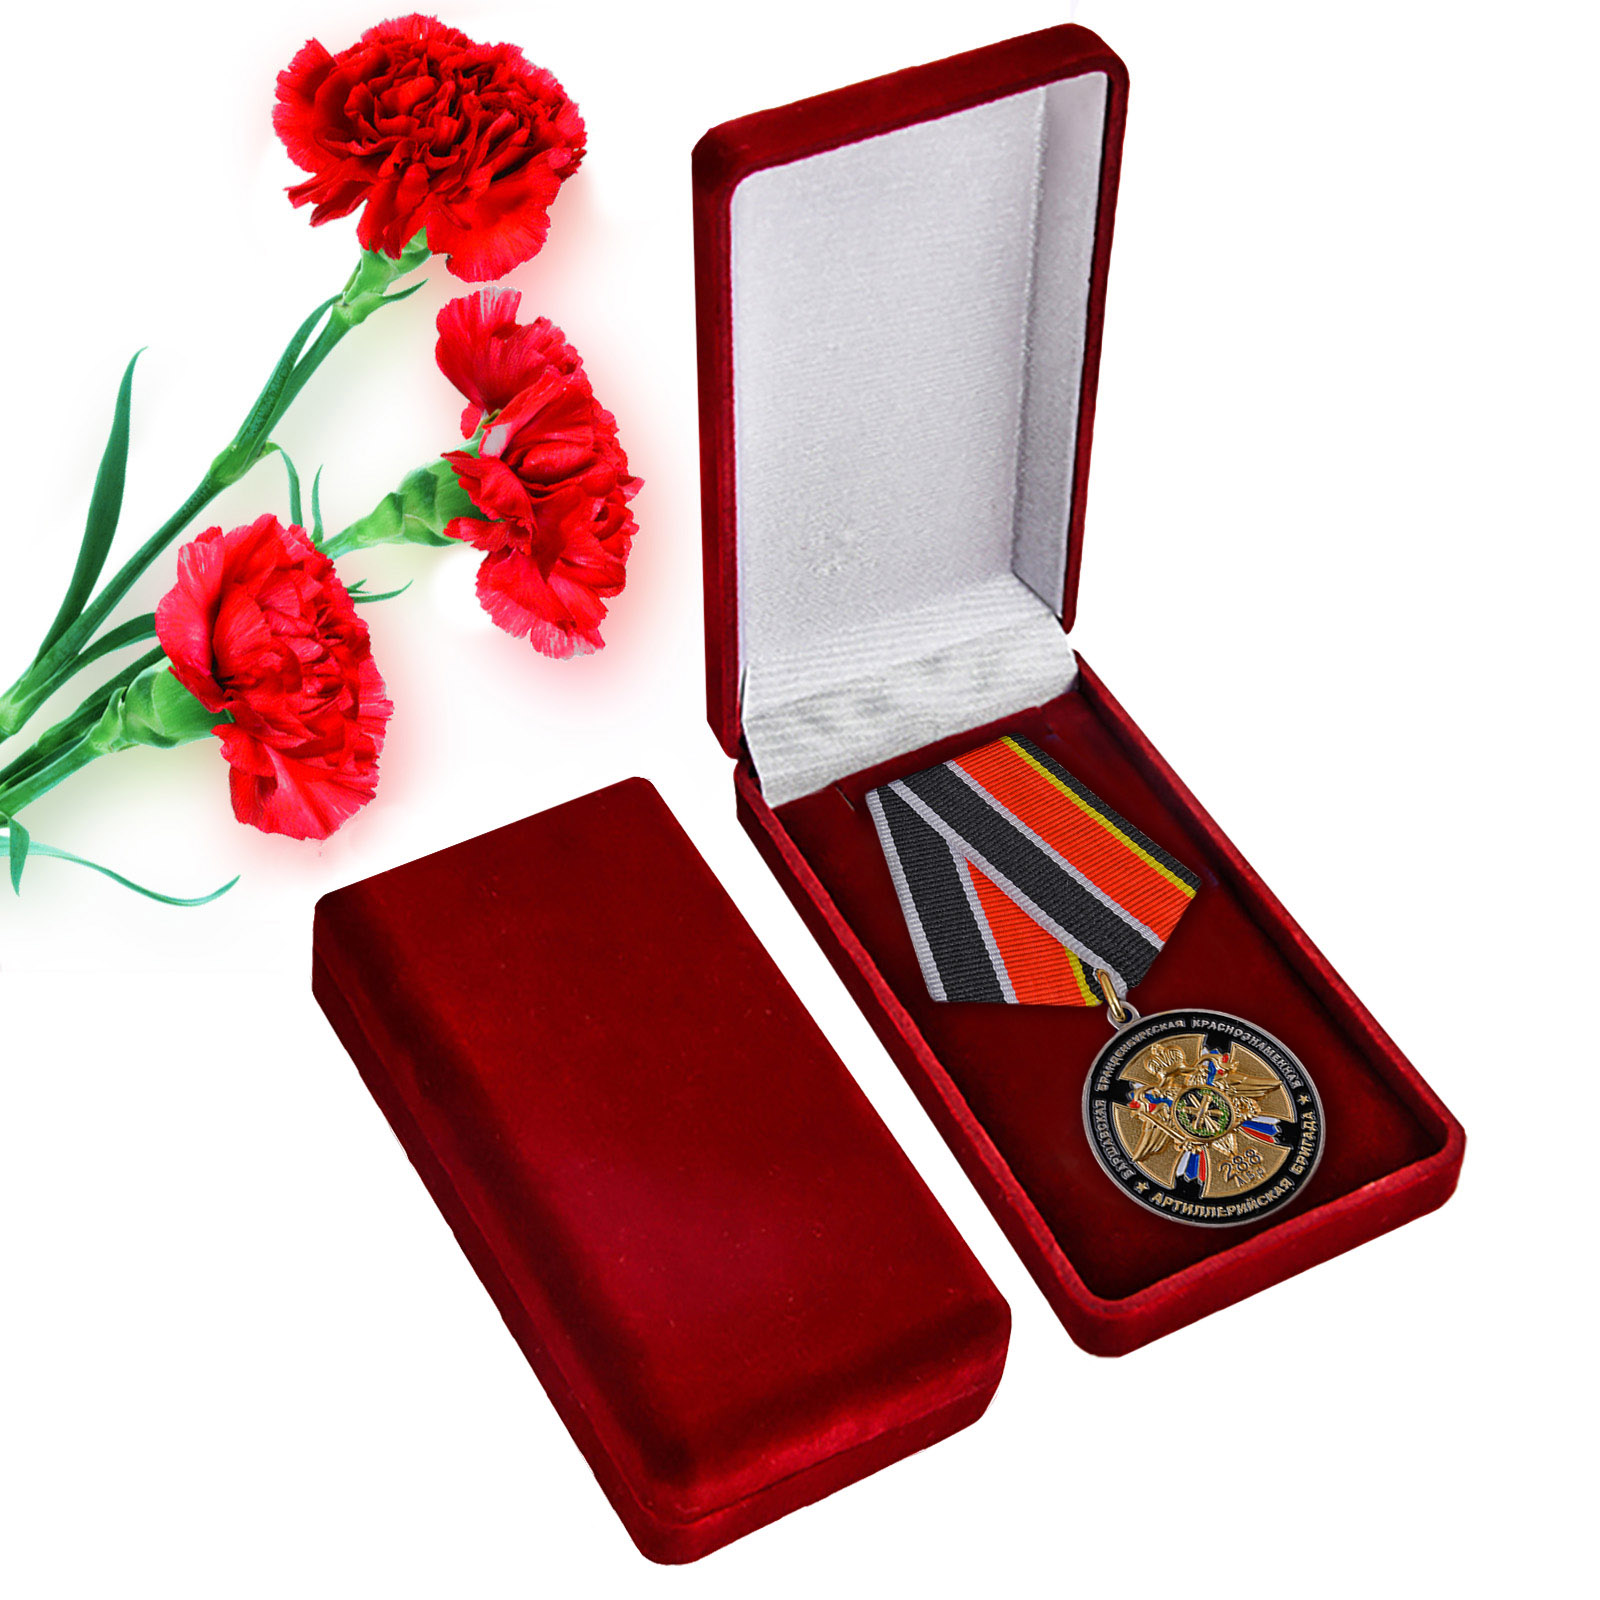 Купить памятную медаль 75 лет 288-ой Артиллерийской бригады онлайн